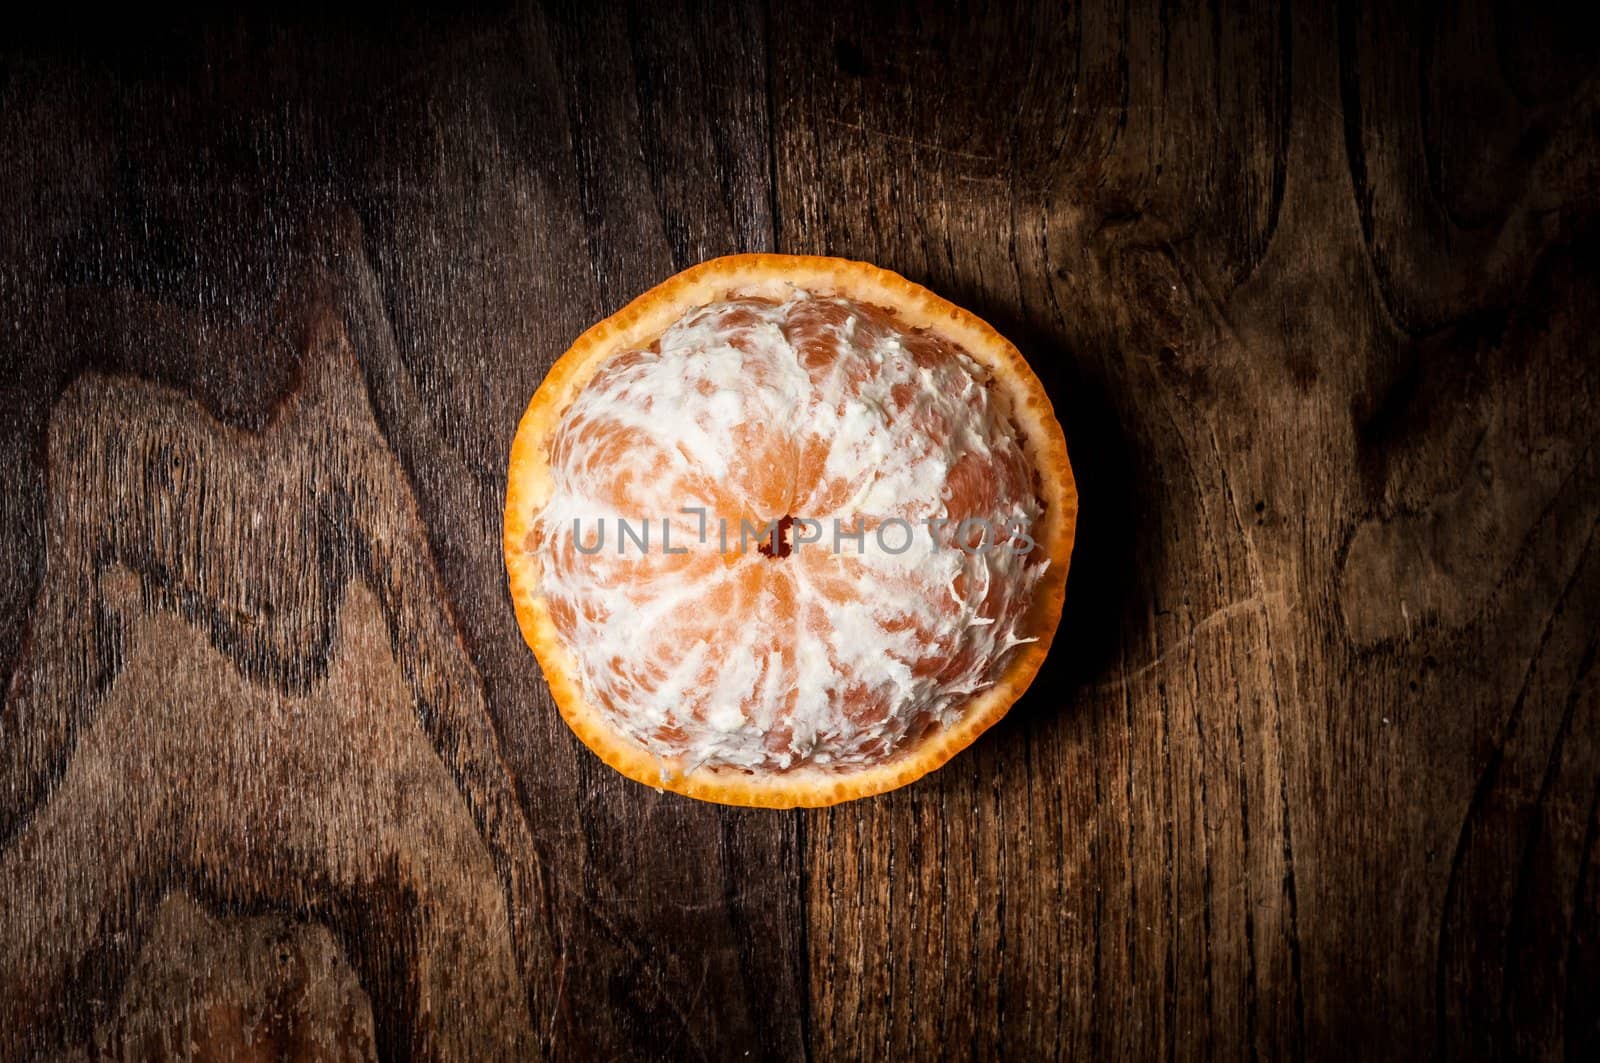 peeled mandarin with leaf on wood by peus